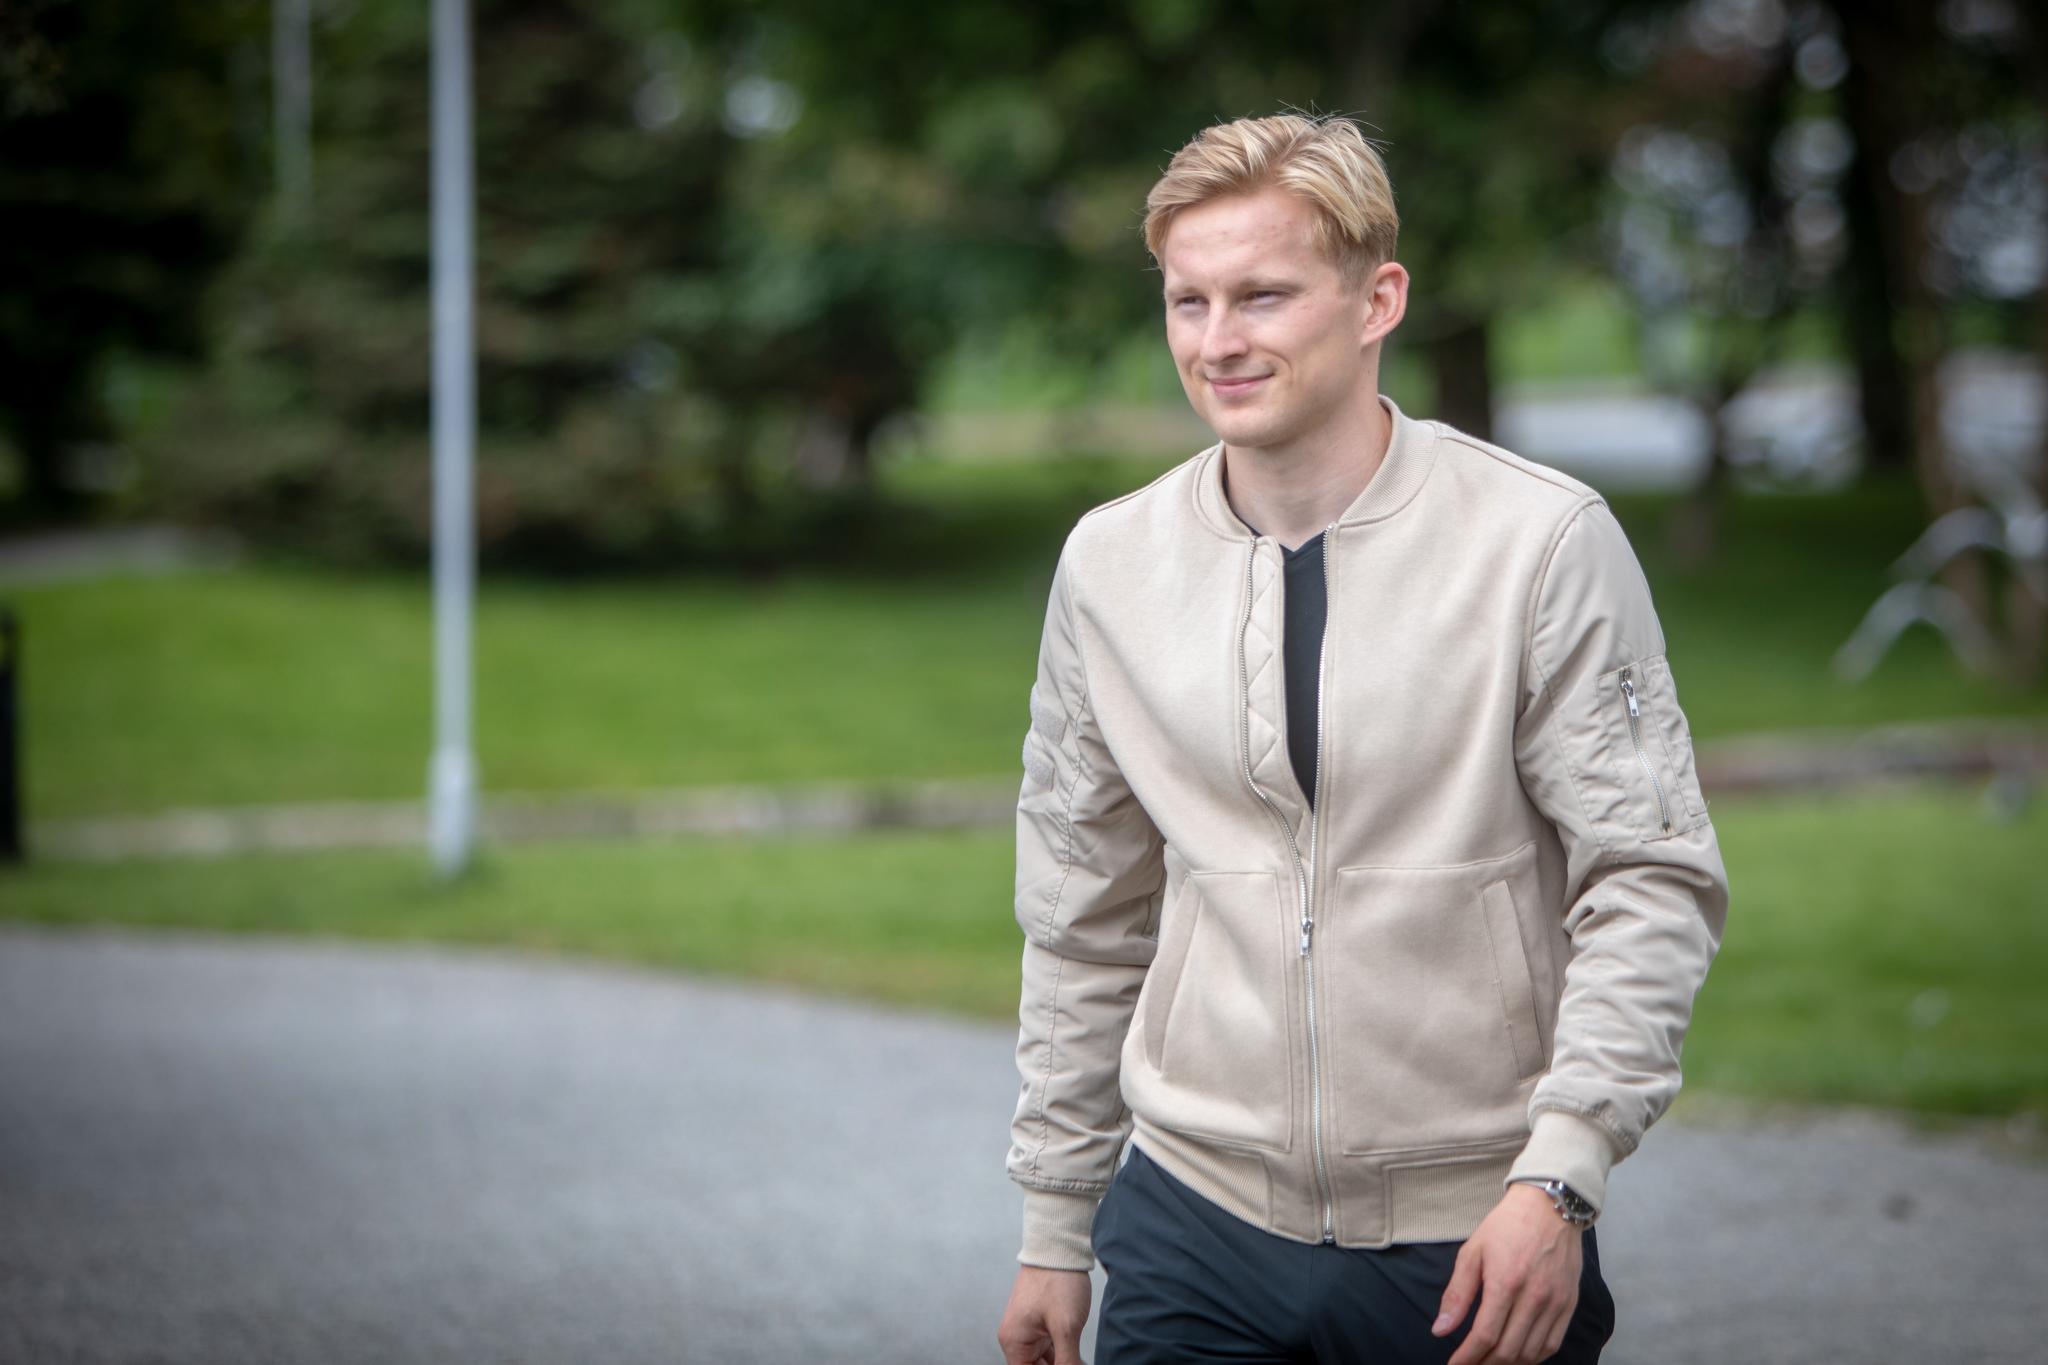 FOTBALL OG MEDISIN: - Jeg har mange interesser. Fotball og medisin er de to største, sier Eirik Birkelund.